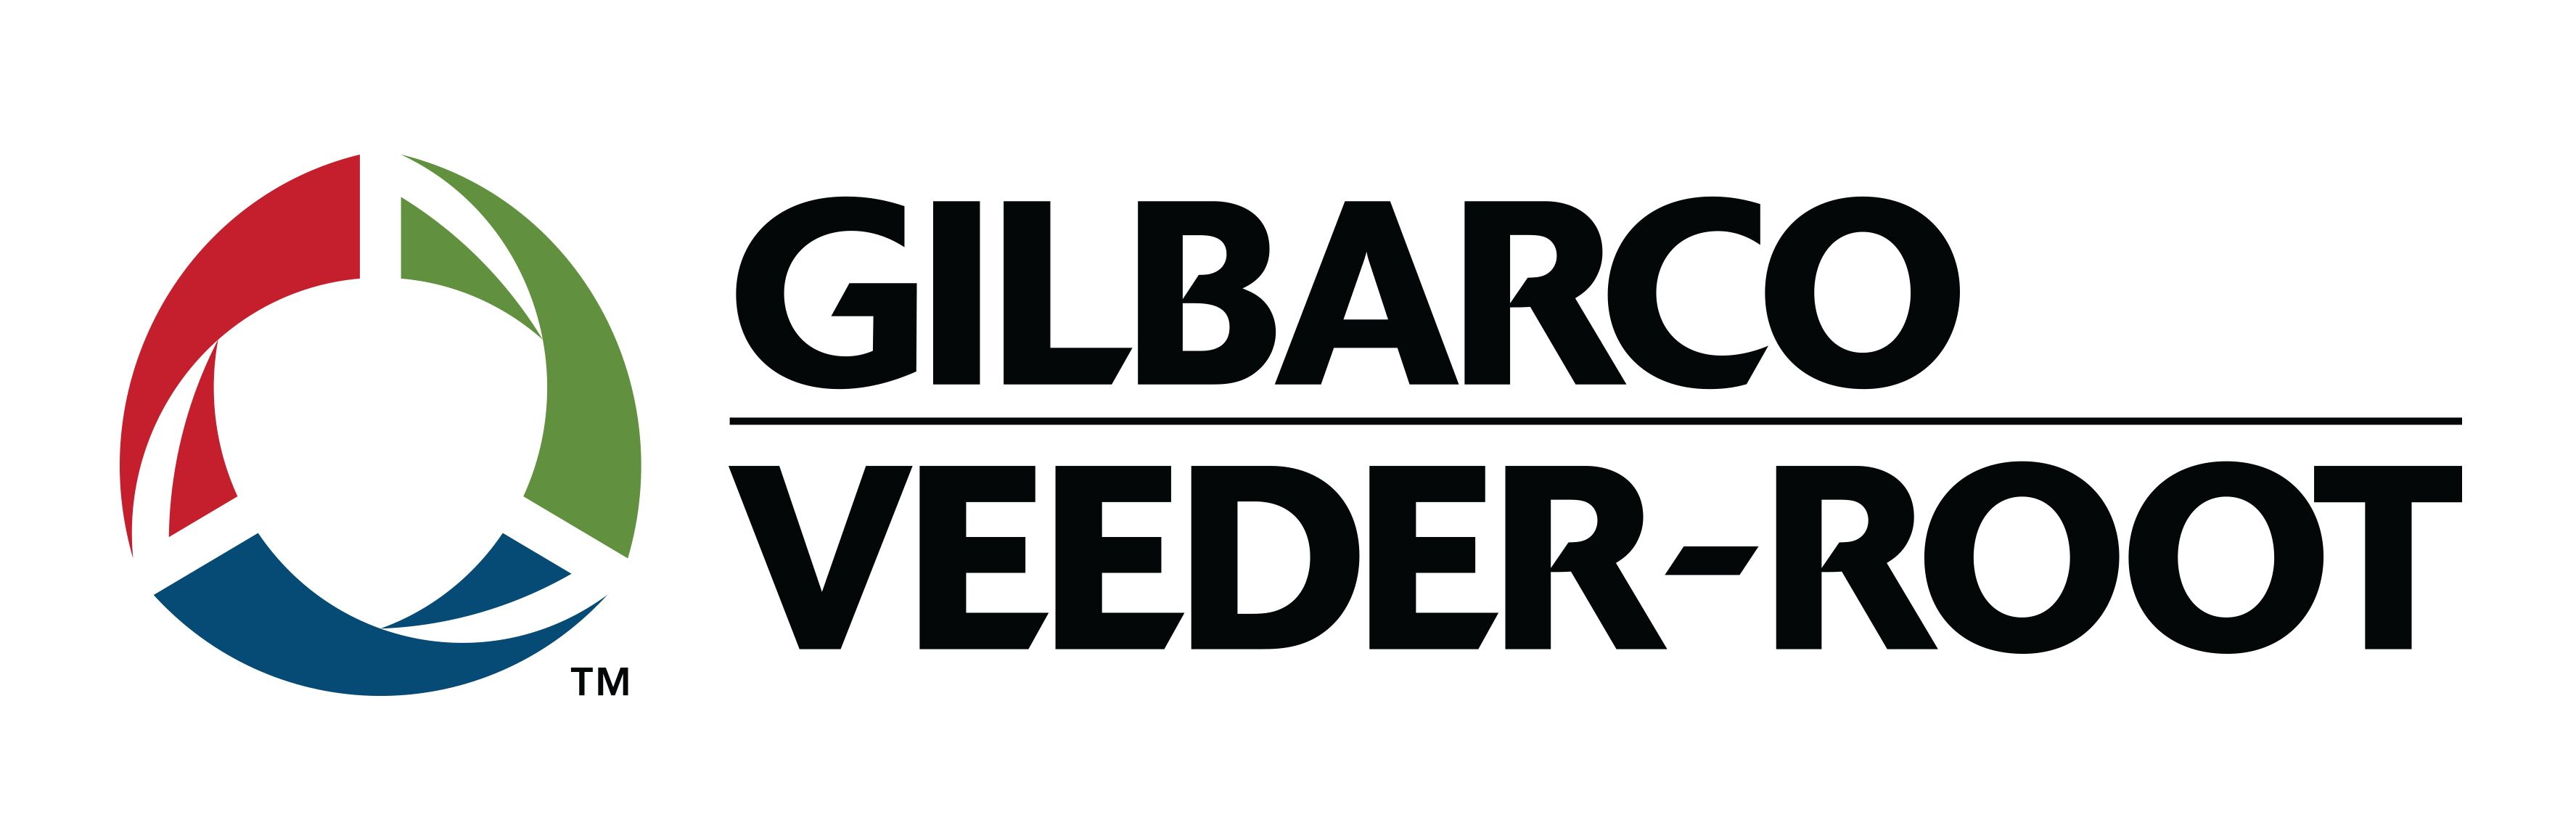 gilbarco logo e1552191430304